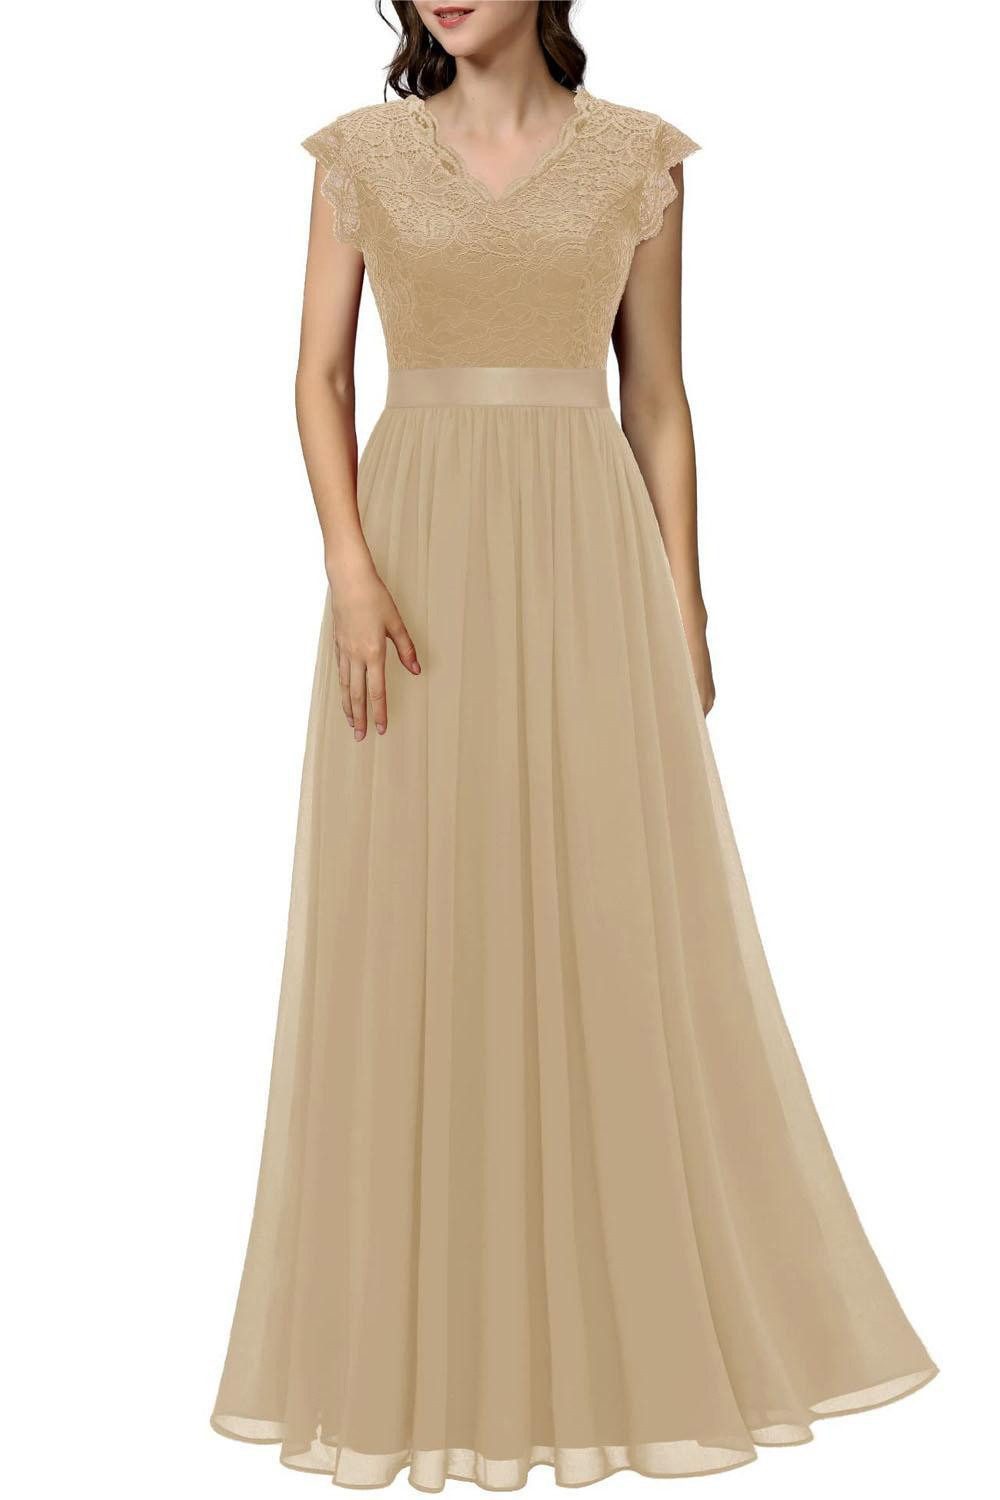 JDMGZSR Abendkleid Einfarbiges, sexy, elegantes, langes Kleid mit Gummiband Ärmelloser Patchwork-Hohlrock mit V-Ausschnitt für Damen